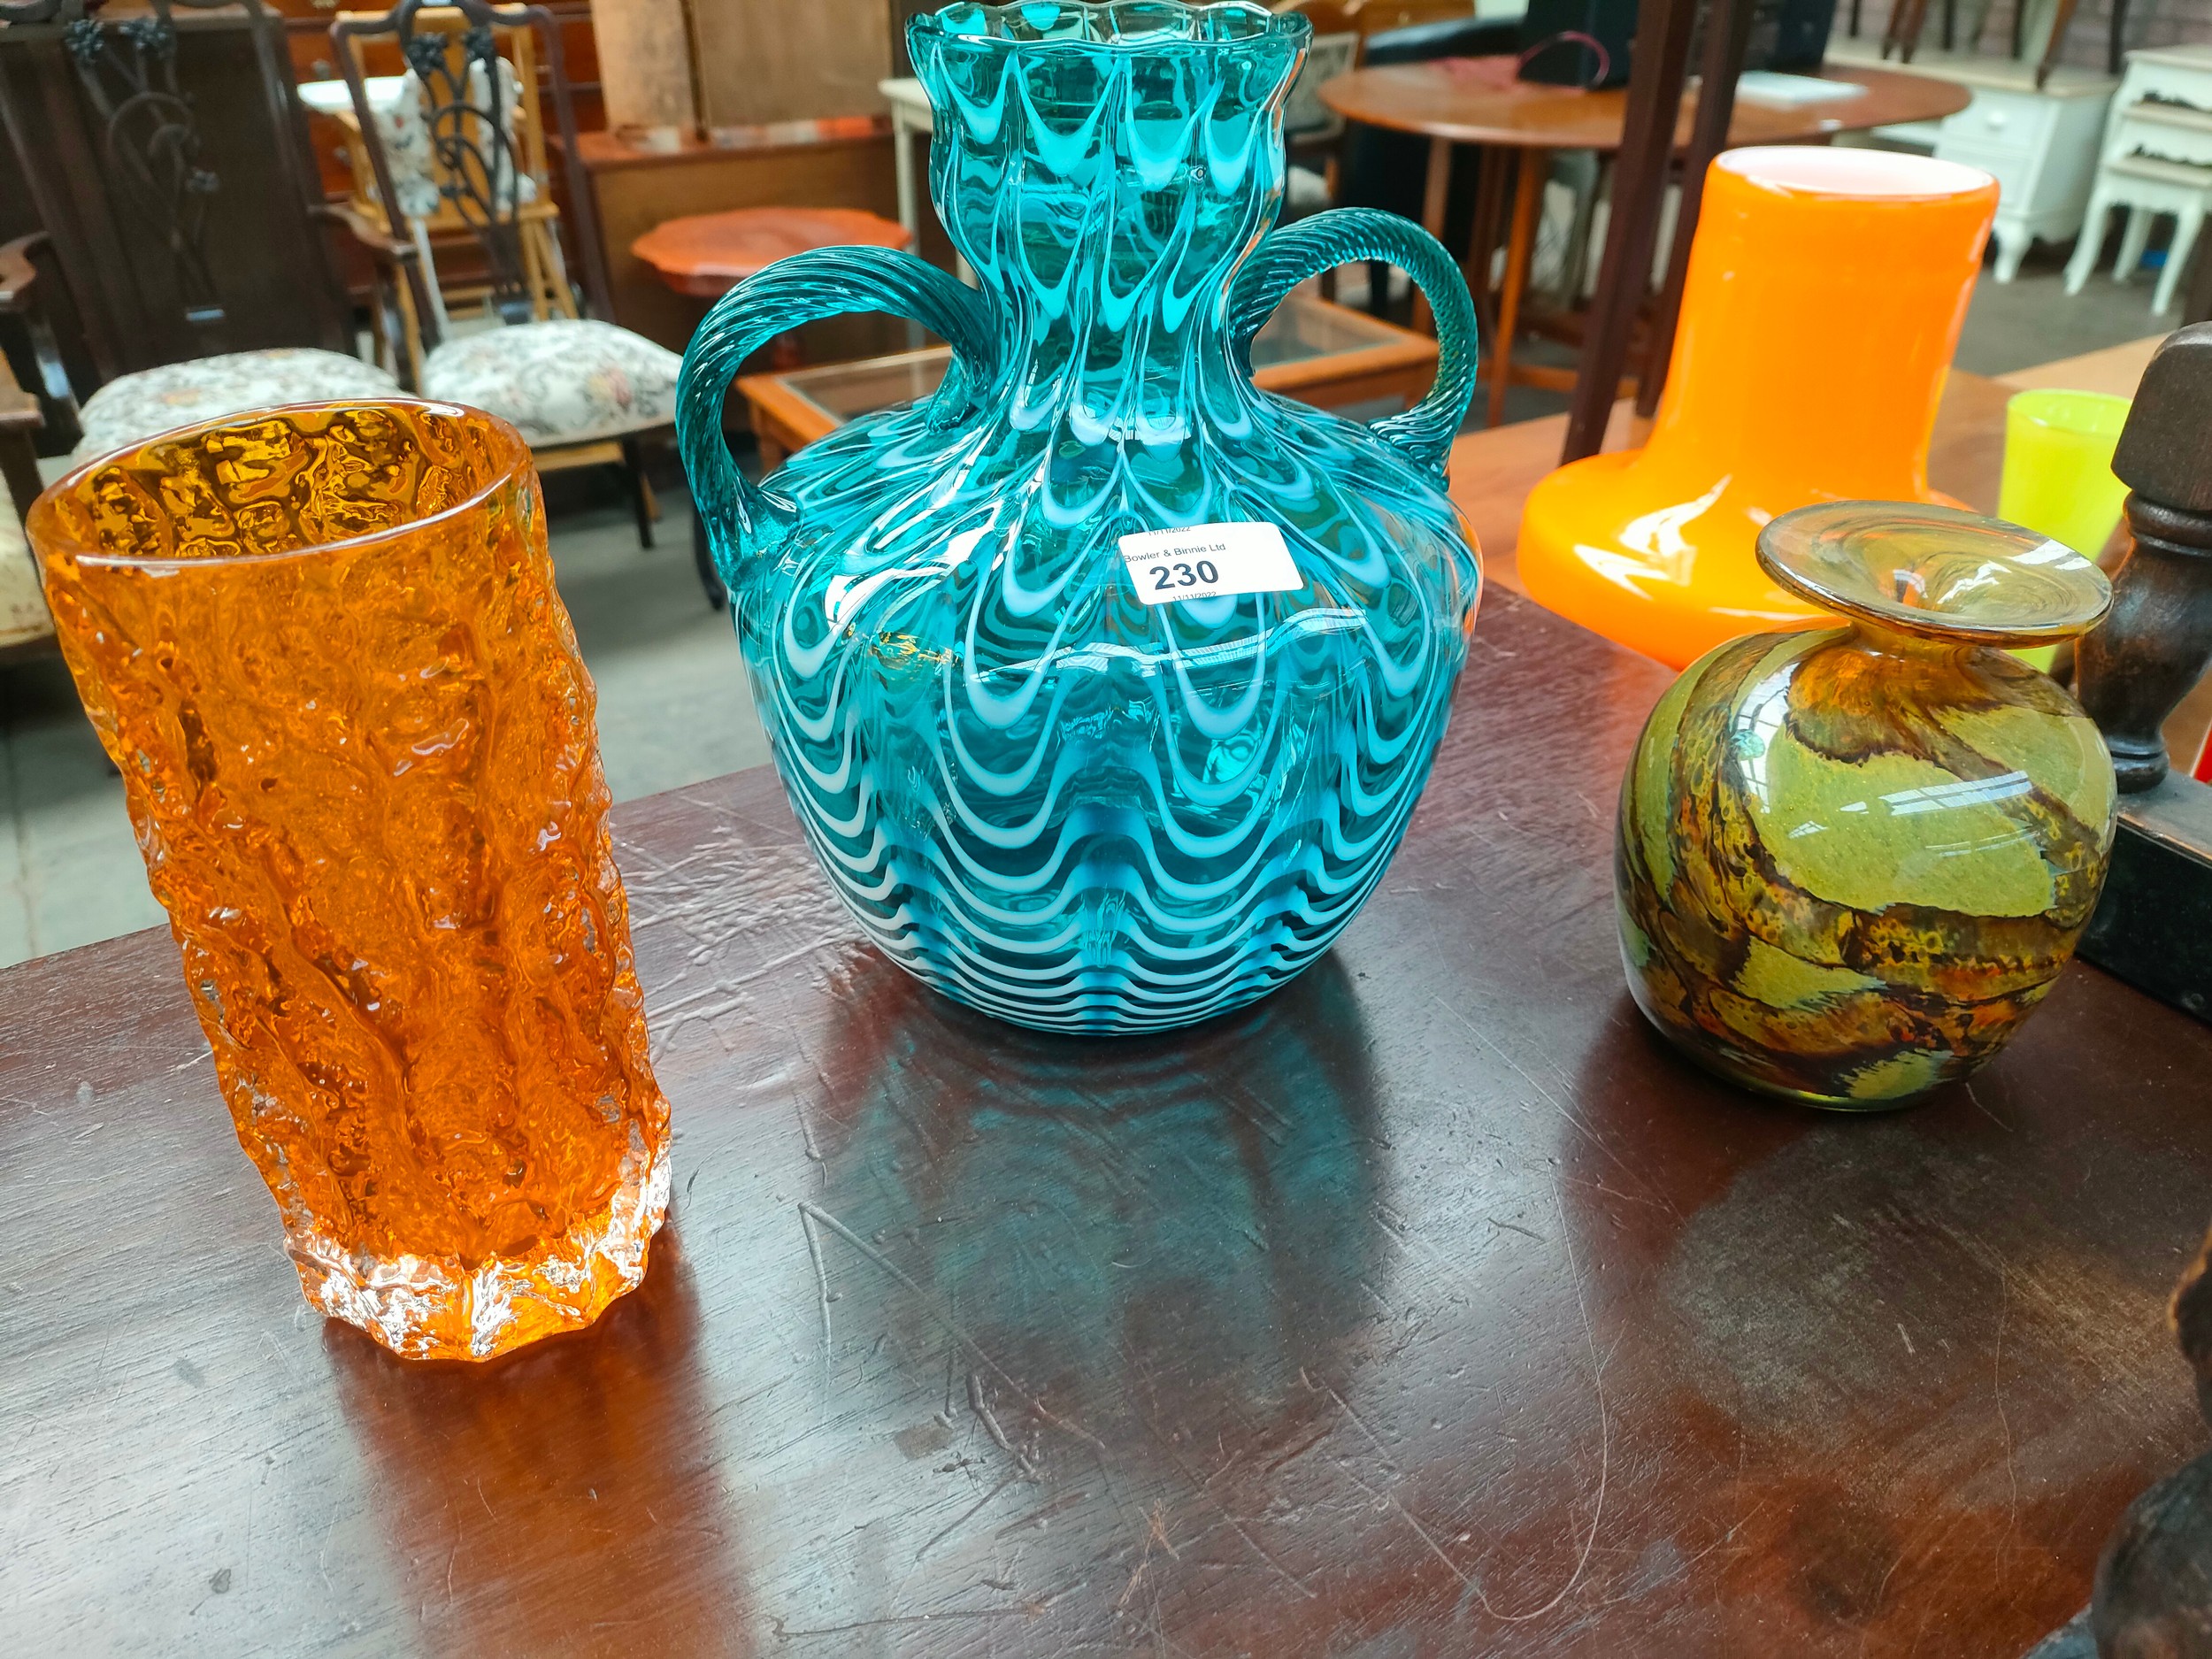 White Friars Orange vase , Large Fenton double handled glass vase together with Murano glass vase